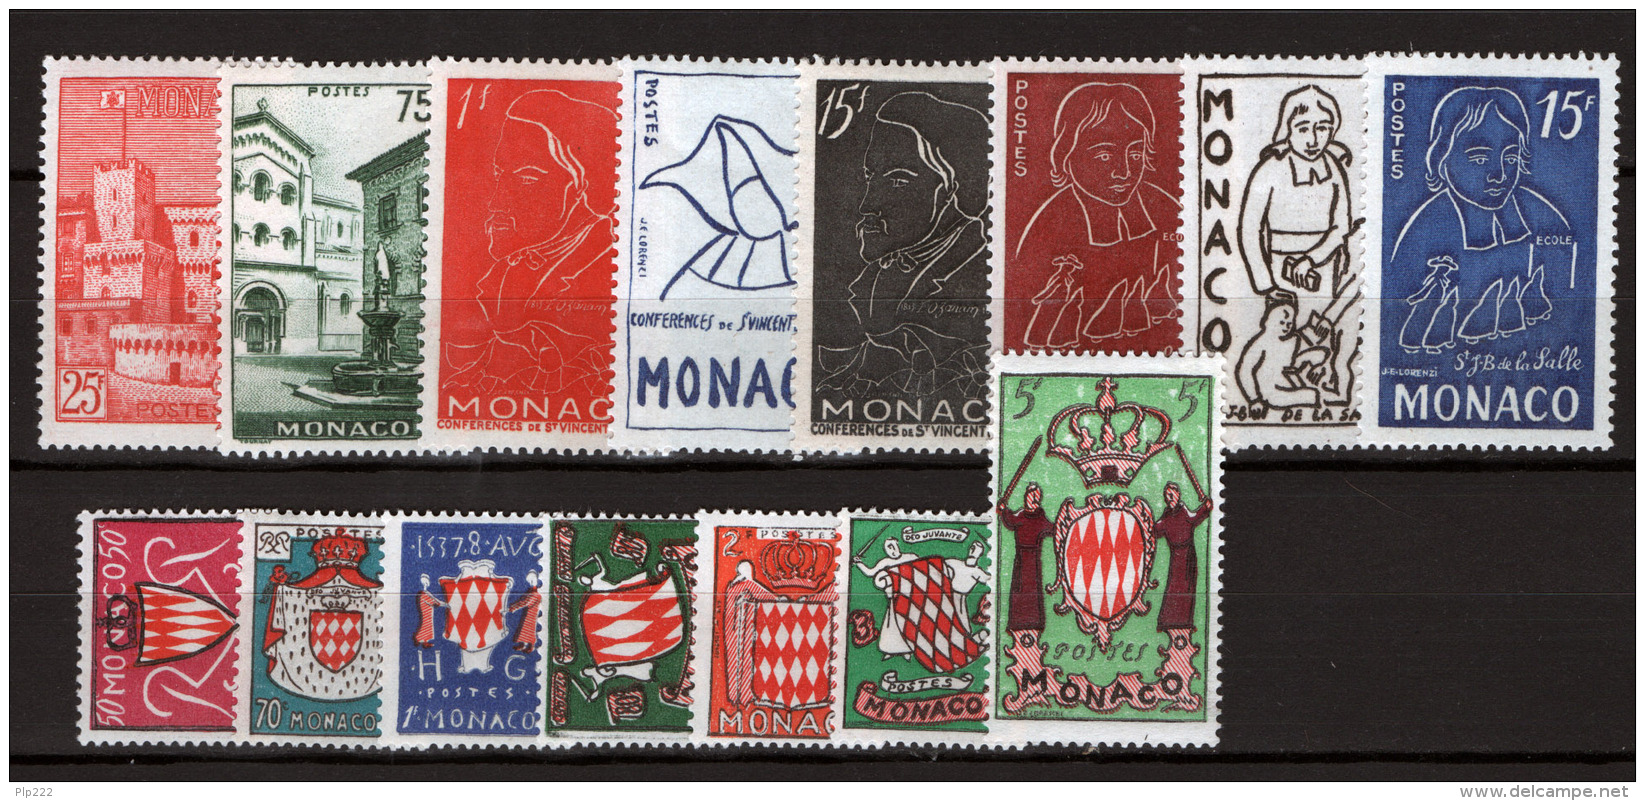 Monaco 1954 Annata Completa / Complete Year Set **/MNH VF - Annate Complete